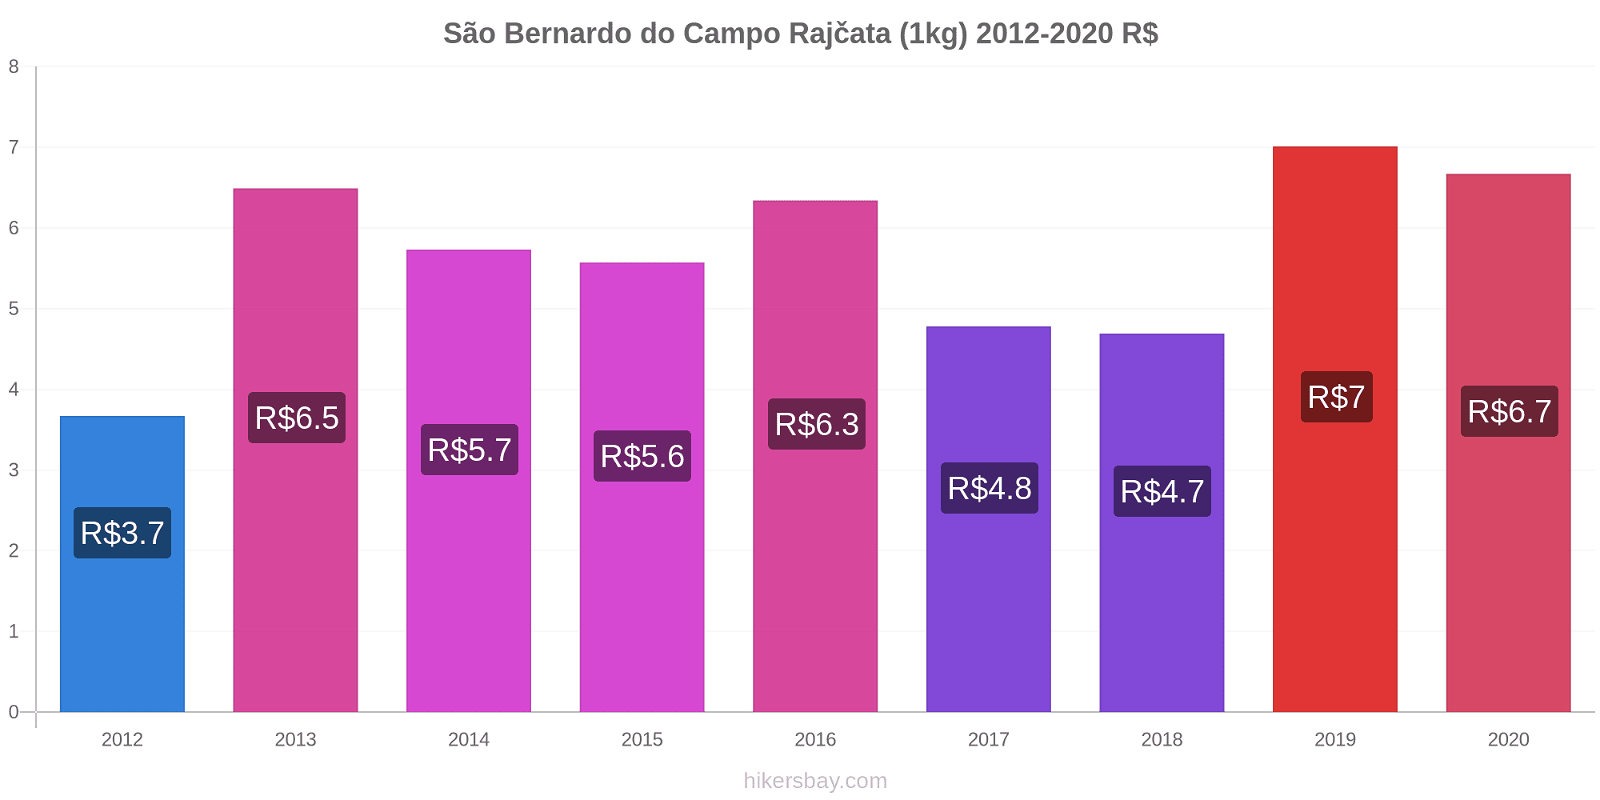 São Bernardo do Campo změny cen Rajčata (1kg) hikersbay.com